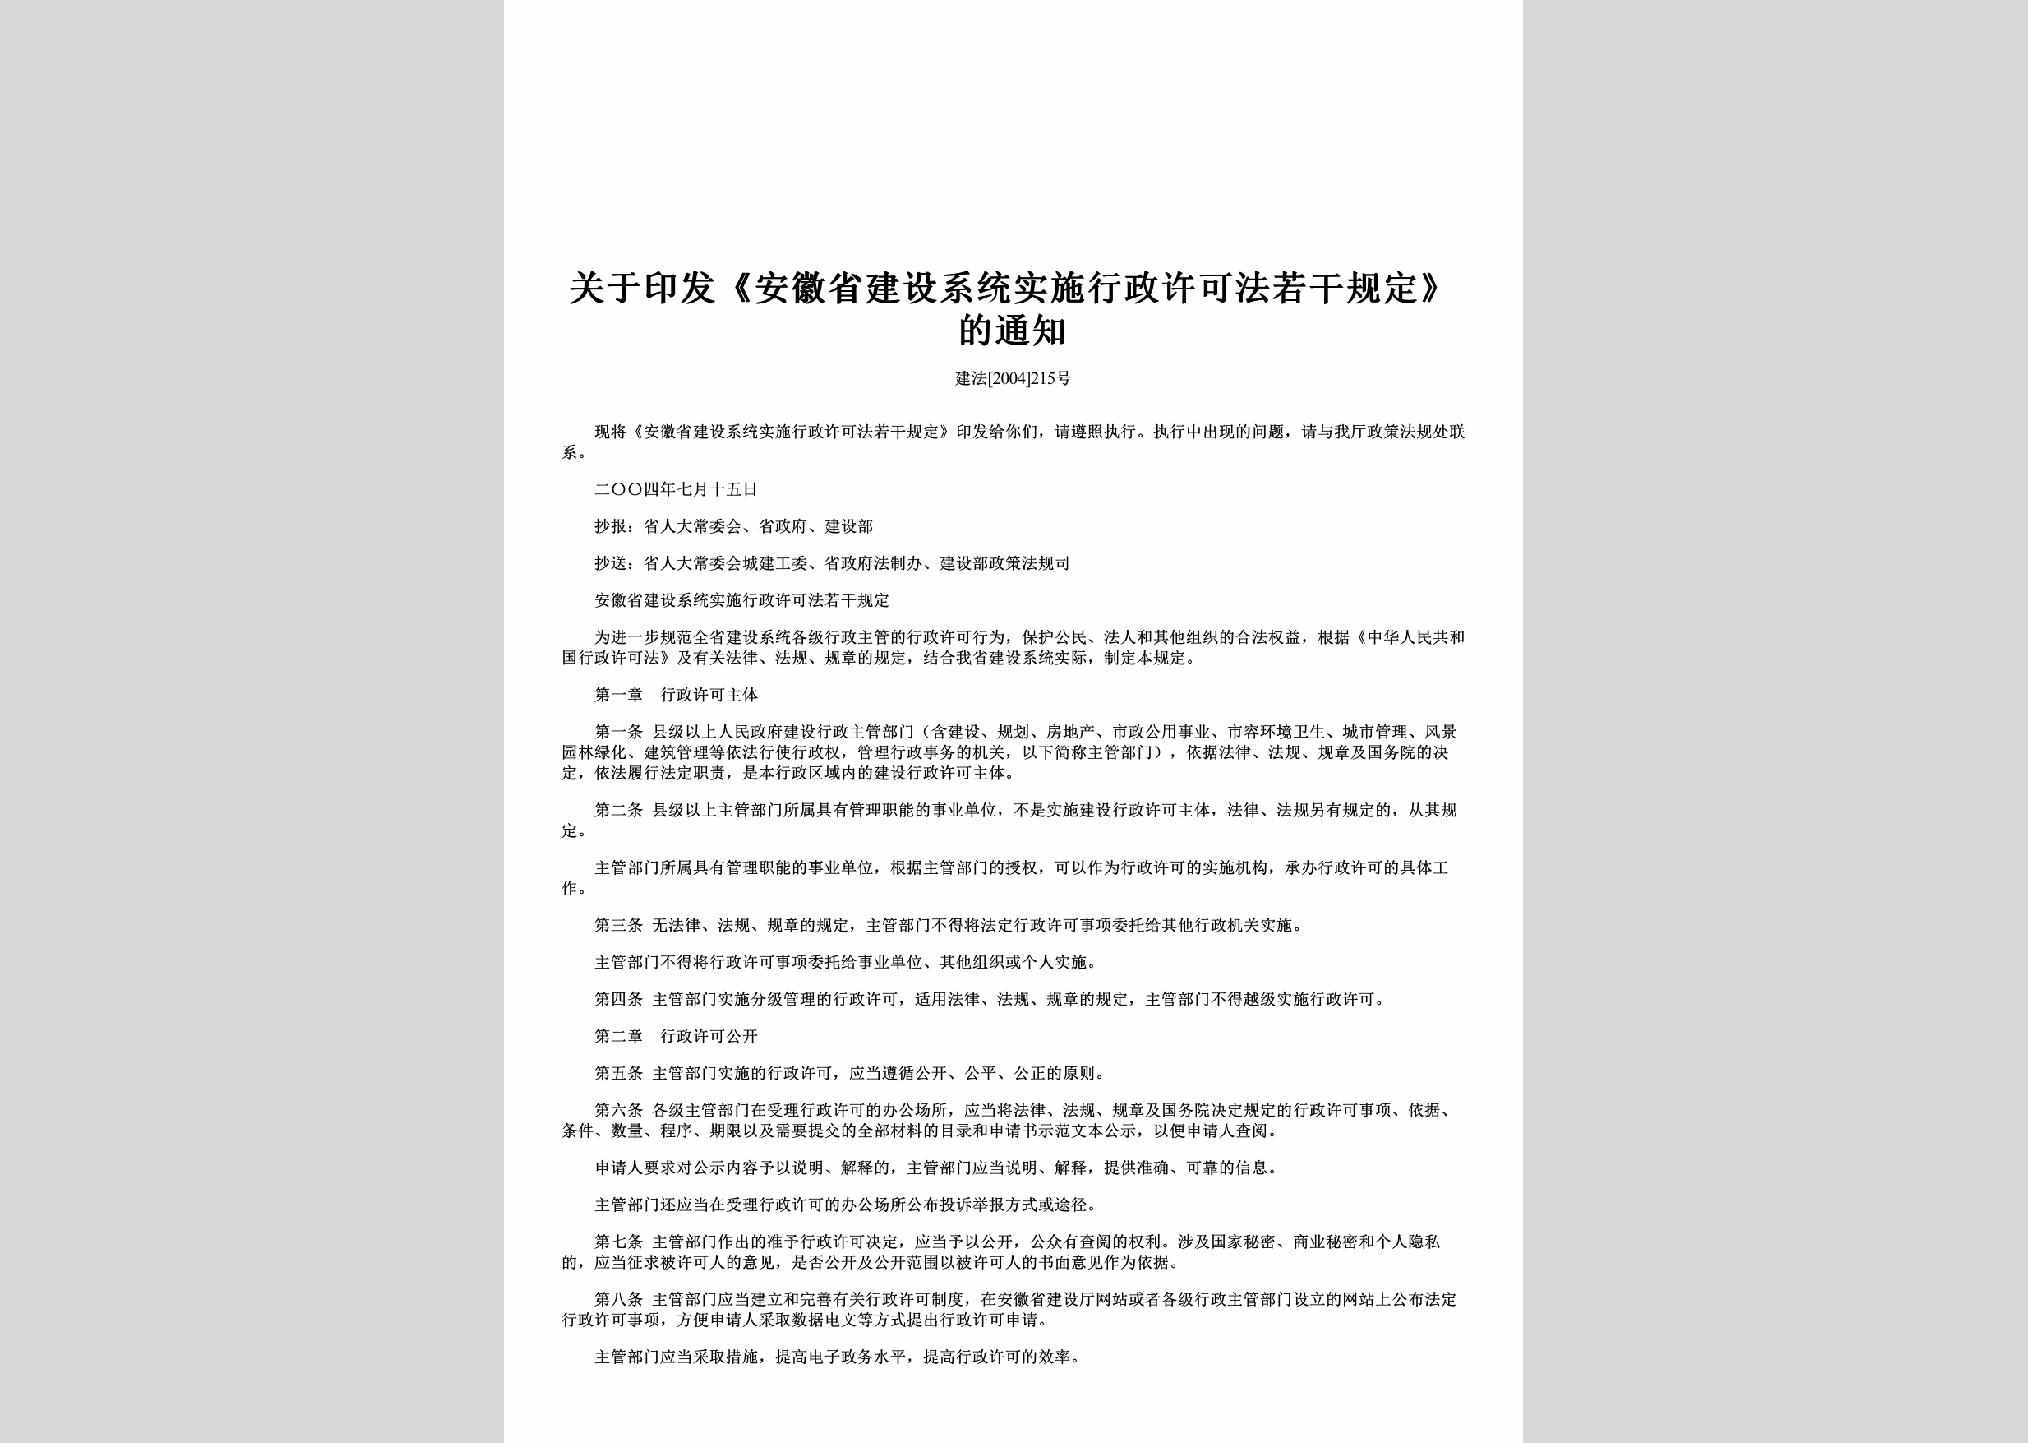 AH-JSXTGDTZ-2004：关于印发《安徽省建设系统实施行政许可法若干规定》的通知